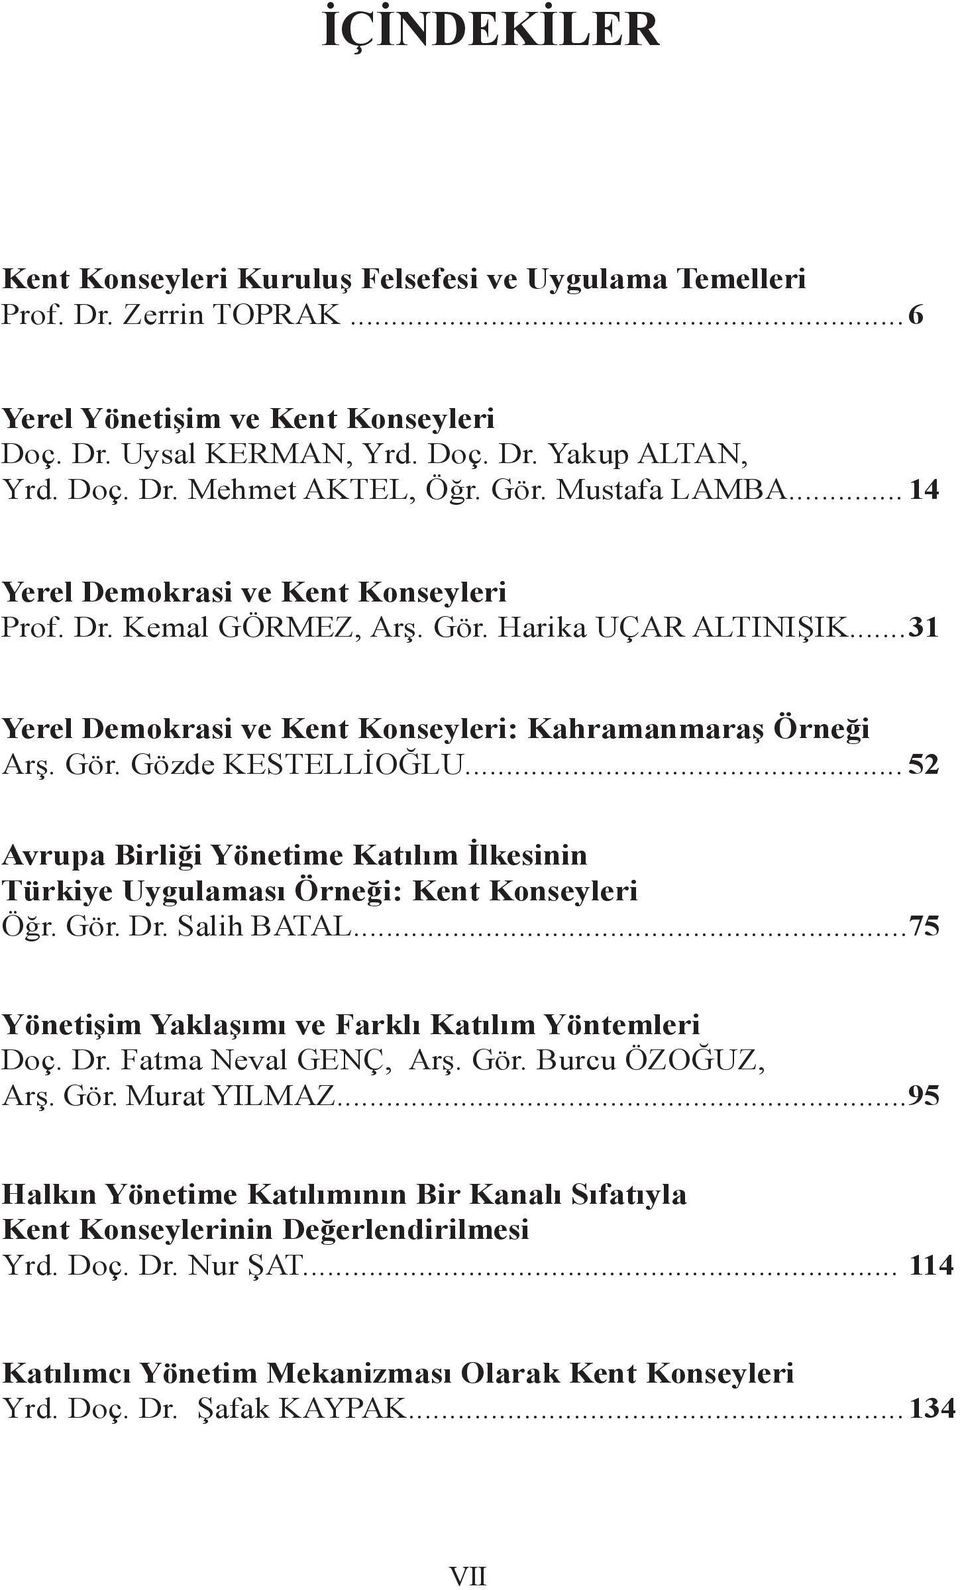 .. 52 Avrupa Birliği Yönetime Katılım İlkesinin Türkiye Uygulaması Örneği: Kent Konseyleri Öğr. Gör. Dr. Salih BATAL...75 Yönetişim Yaklaşımı ve Farklı Katılım Yöntemleri Doç. Dr. Fatma Neval GENÇ, Arş.